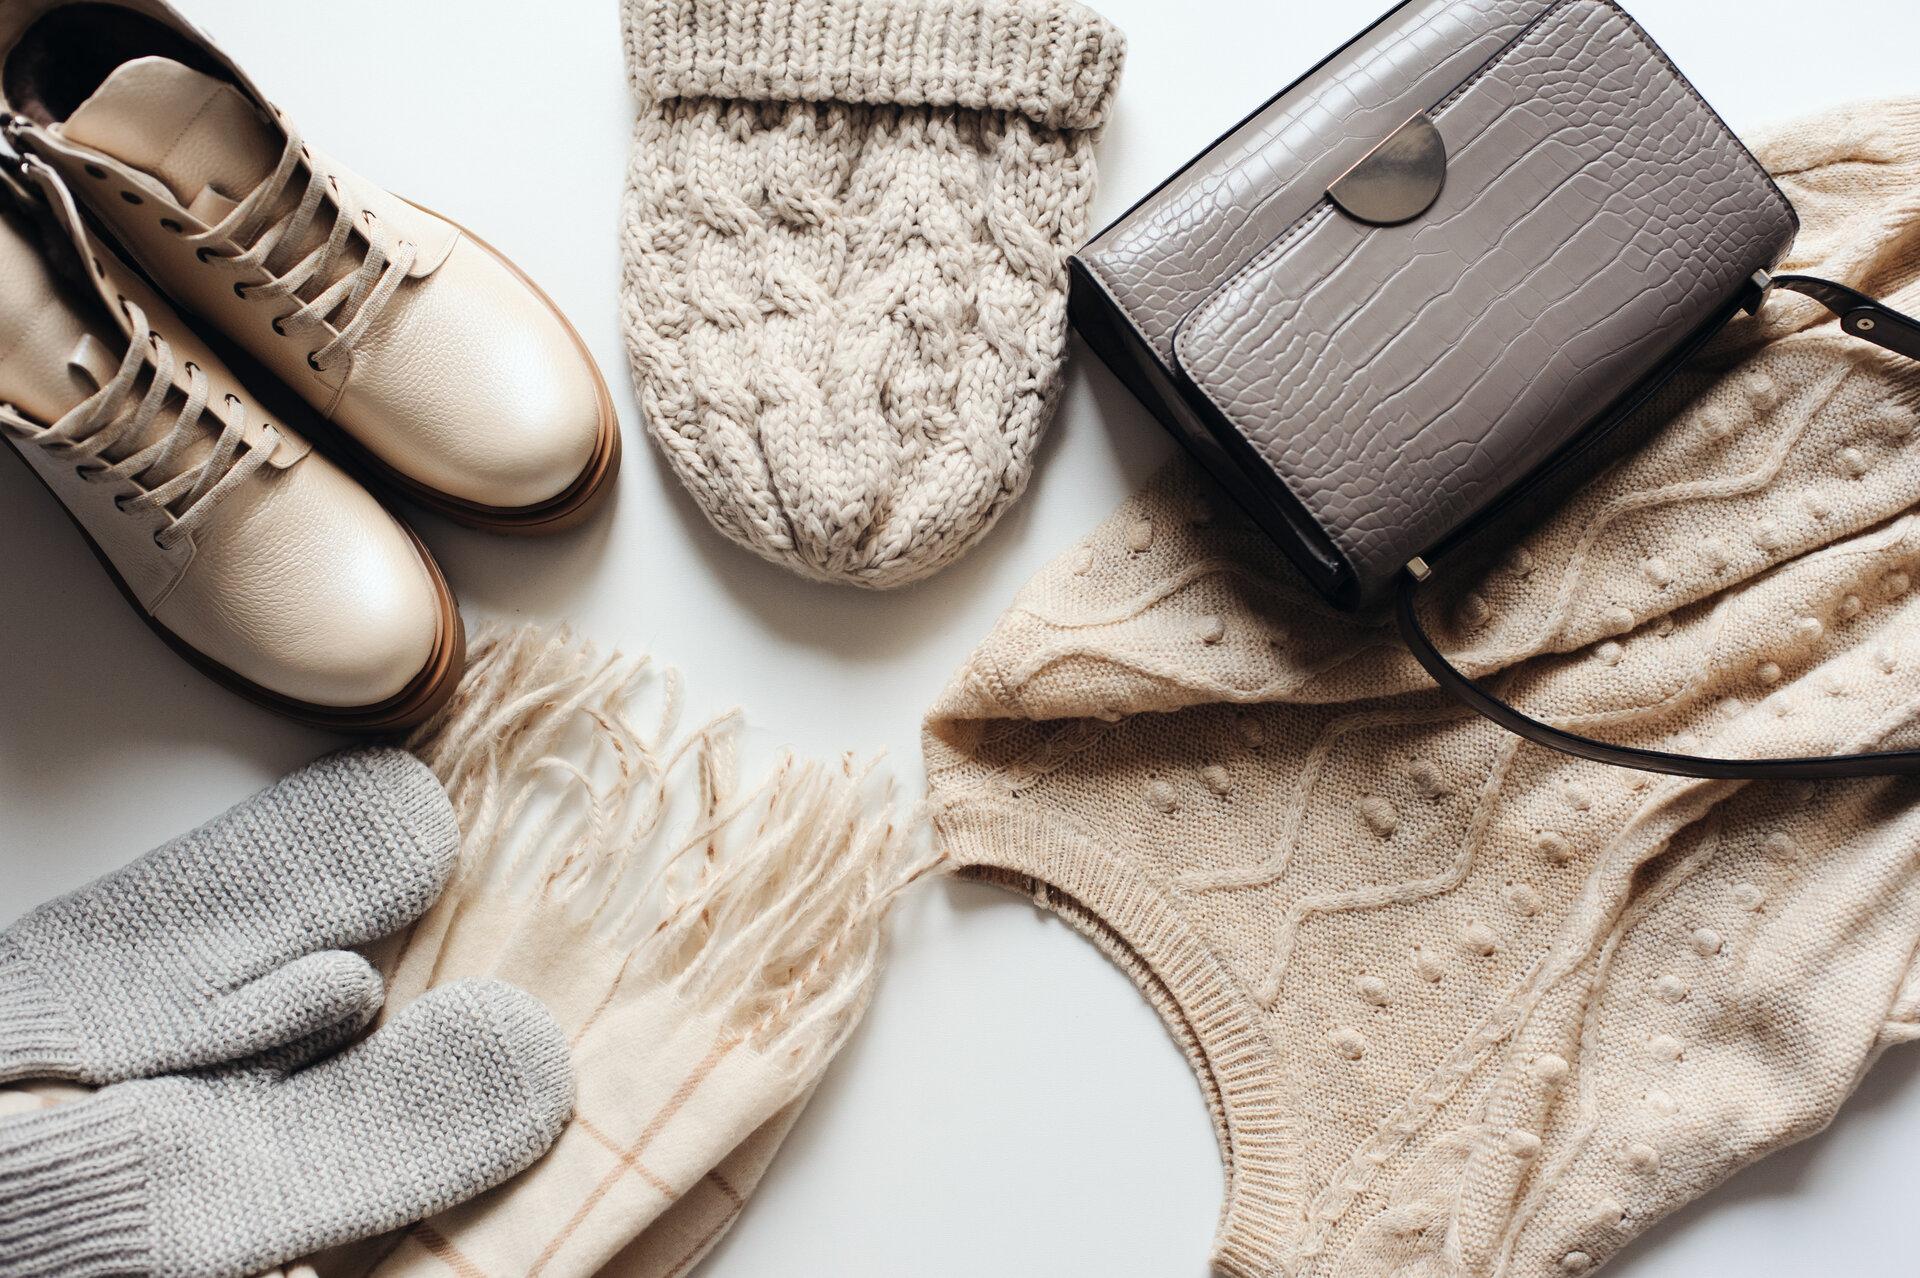 Wintermode-Set von Frauenkleidung in neutralen Tönen: warmer Pullover, Hut, Fäustlinge, Schuhe und Handtasche auf weißem Hintergrund